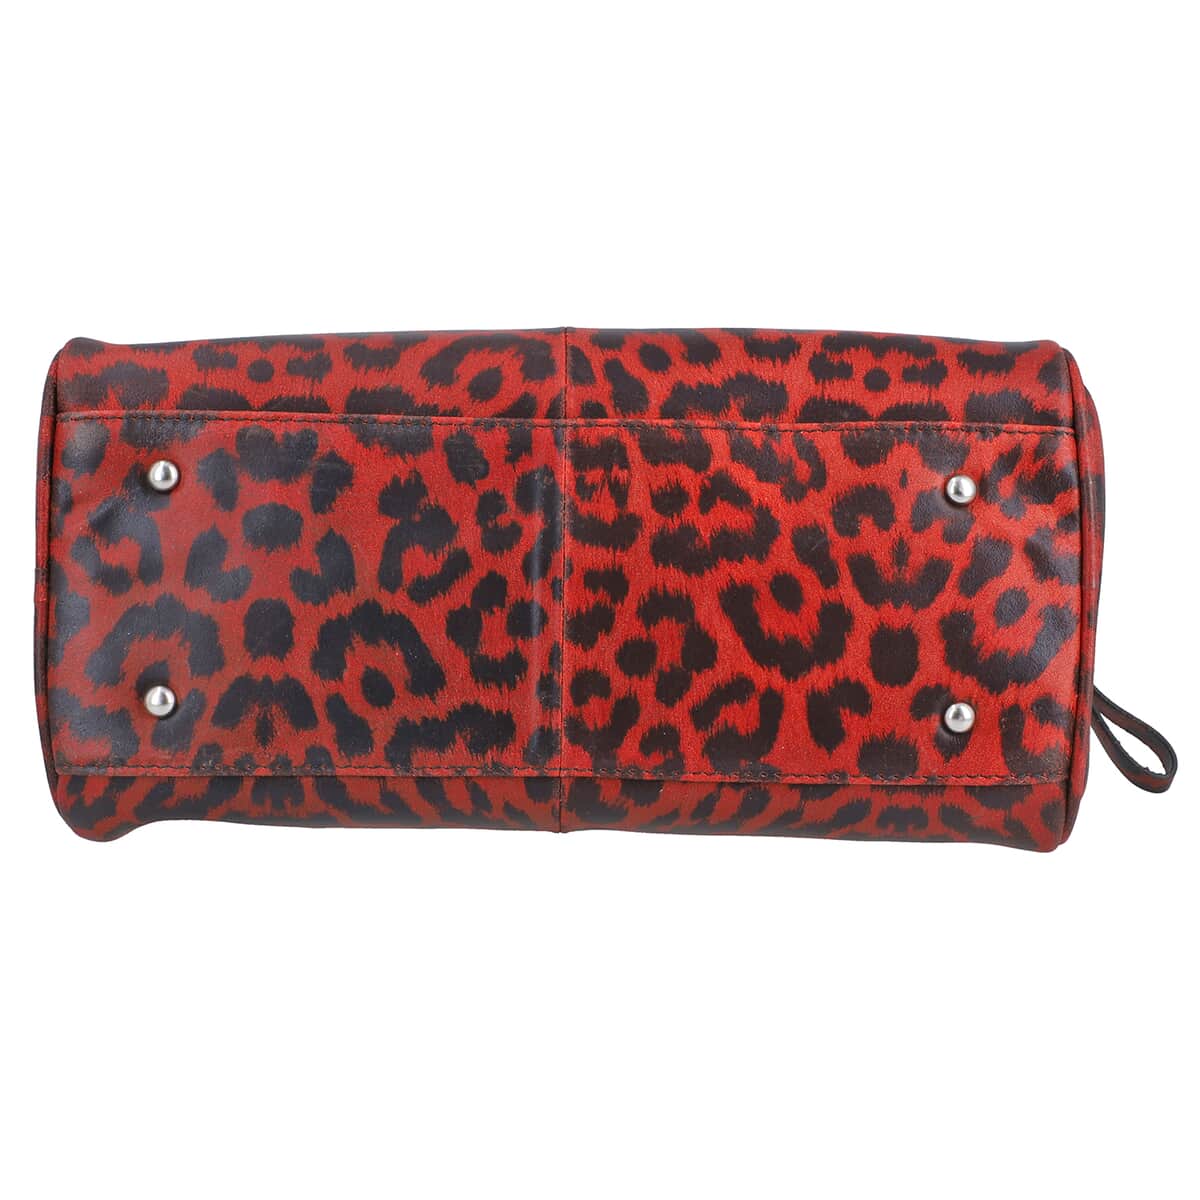 Red and Black Leopard Foiled Pattern Genuine Leather Shoulder Bag with Adjustable Strap image number 5